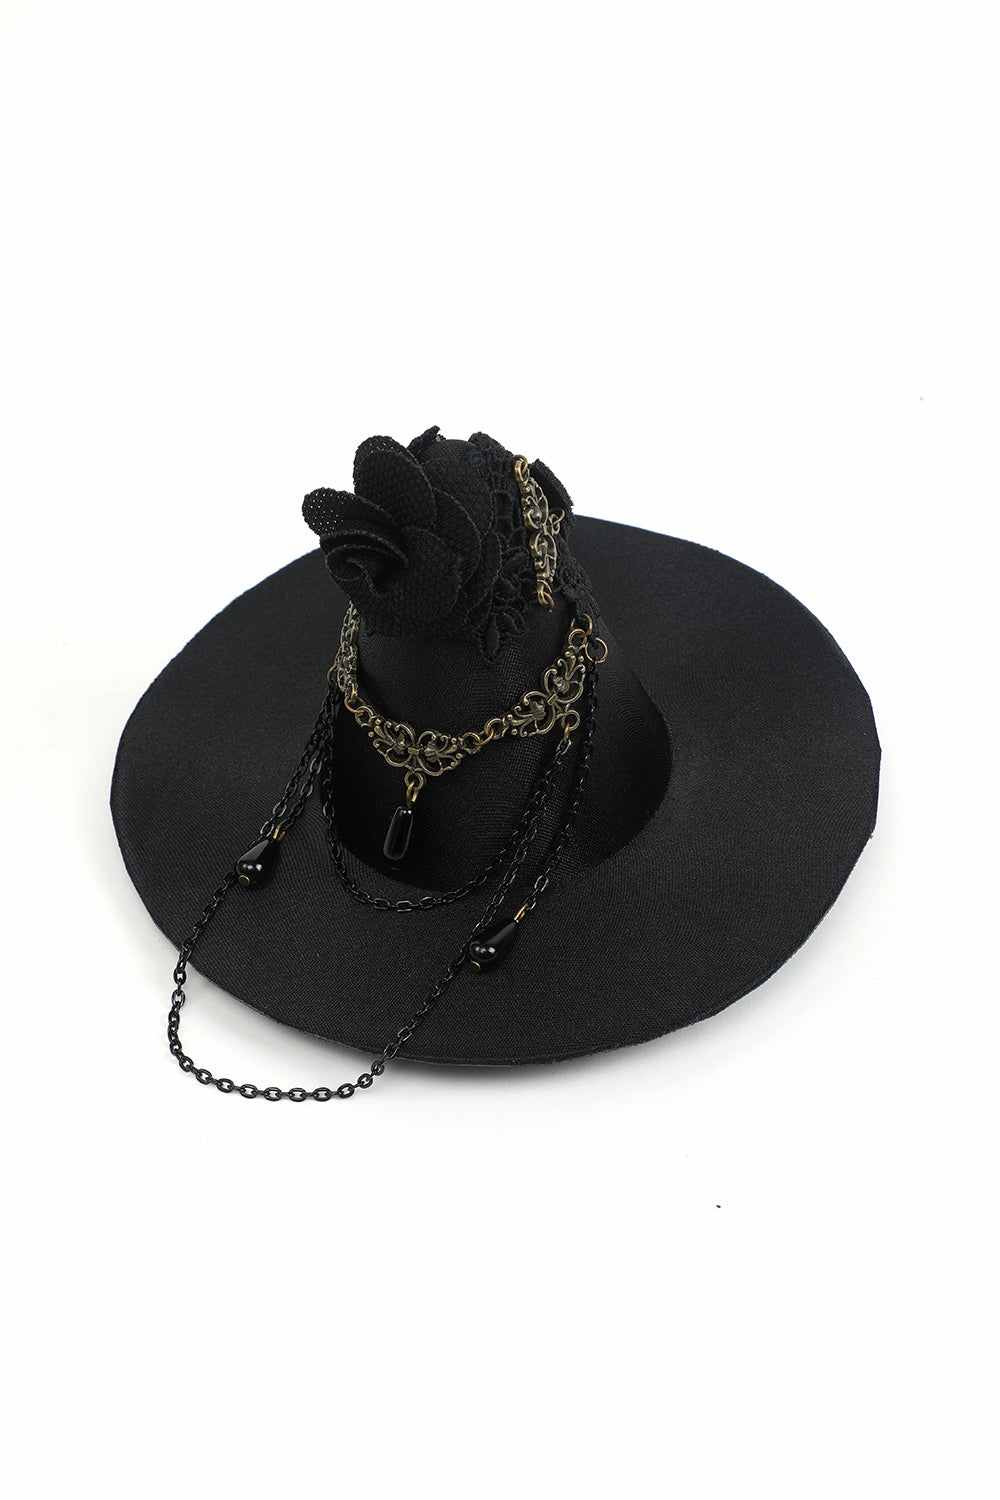 Gothic Witch Wizard Hat